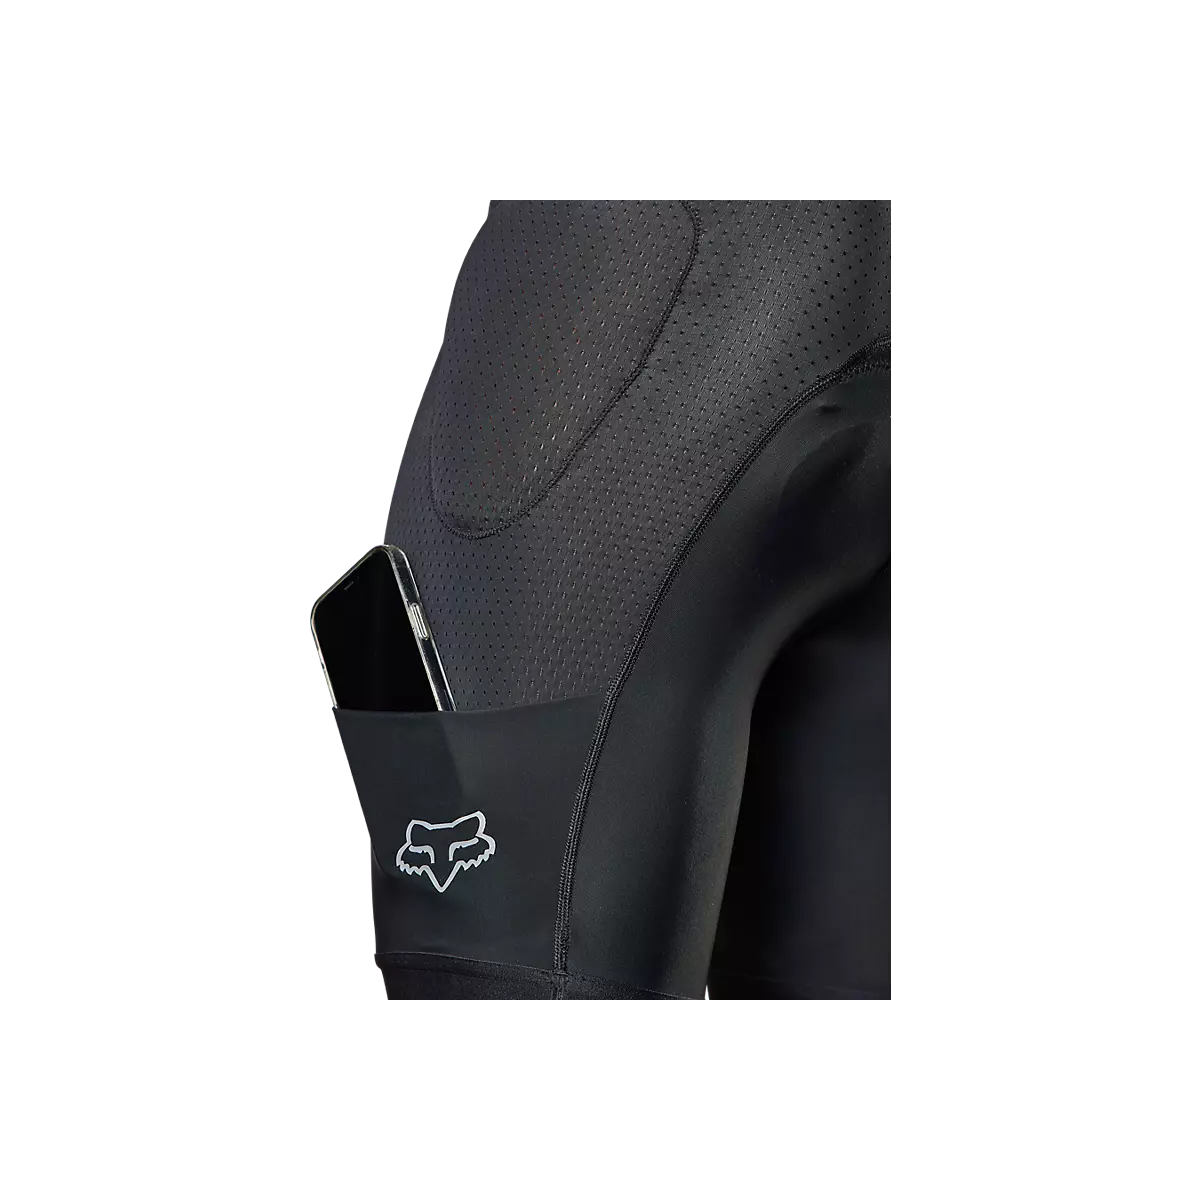 detalle del bolsillo del Culotte con protección y badana de calidad Fox Baseframe Pro D3O negro